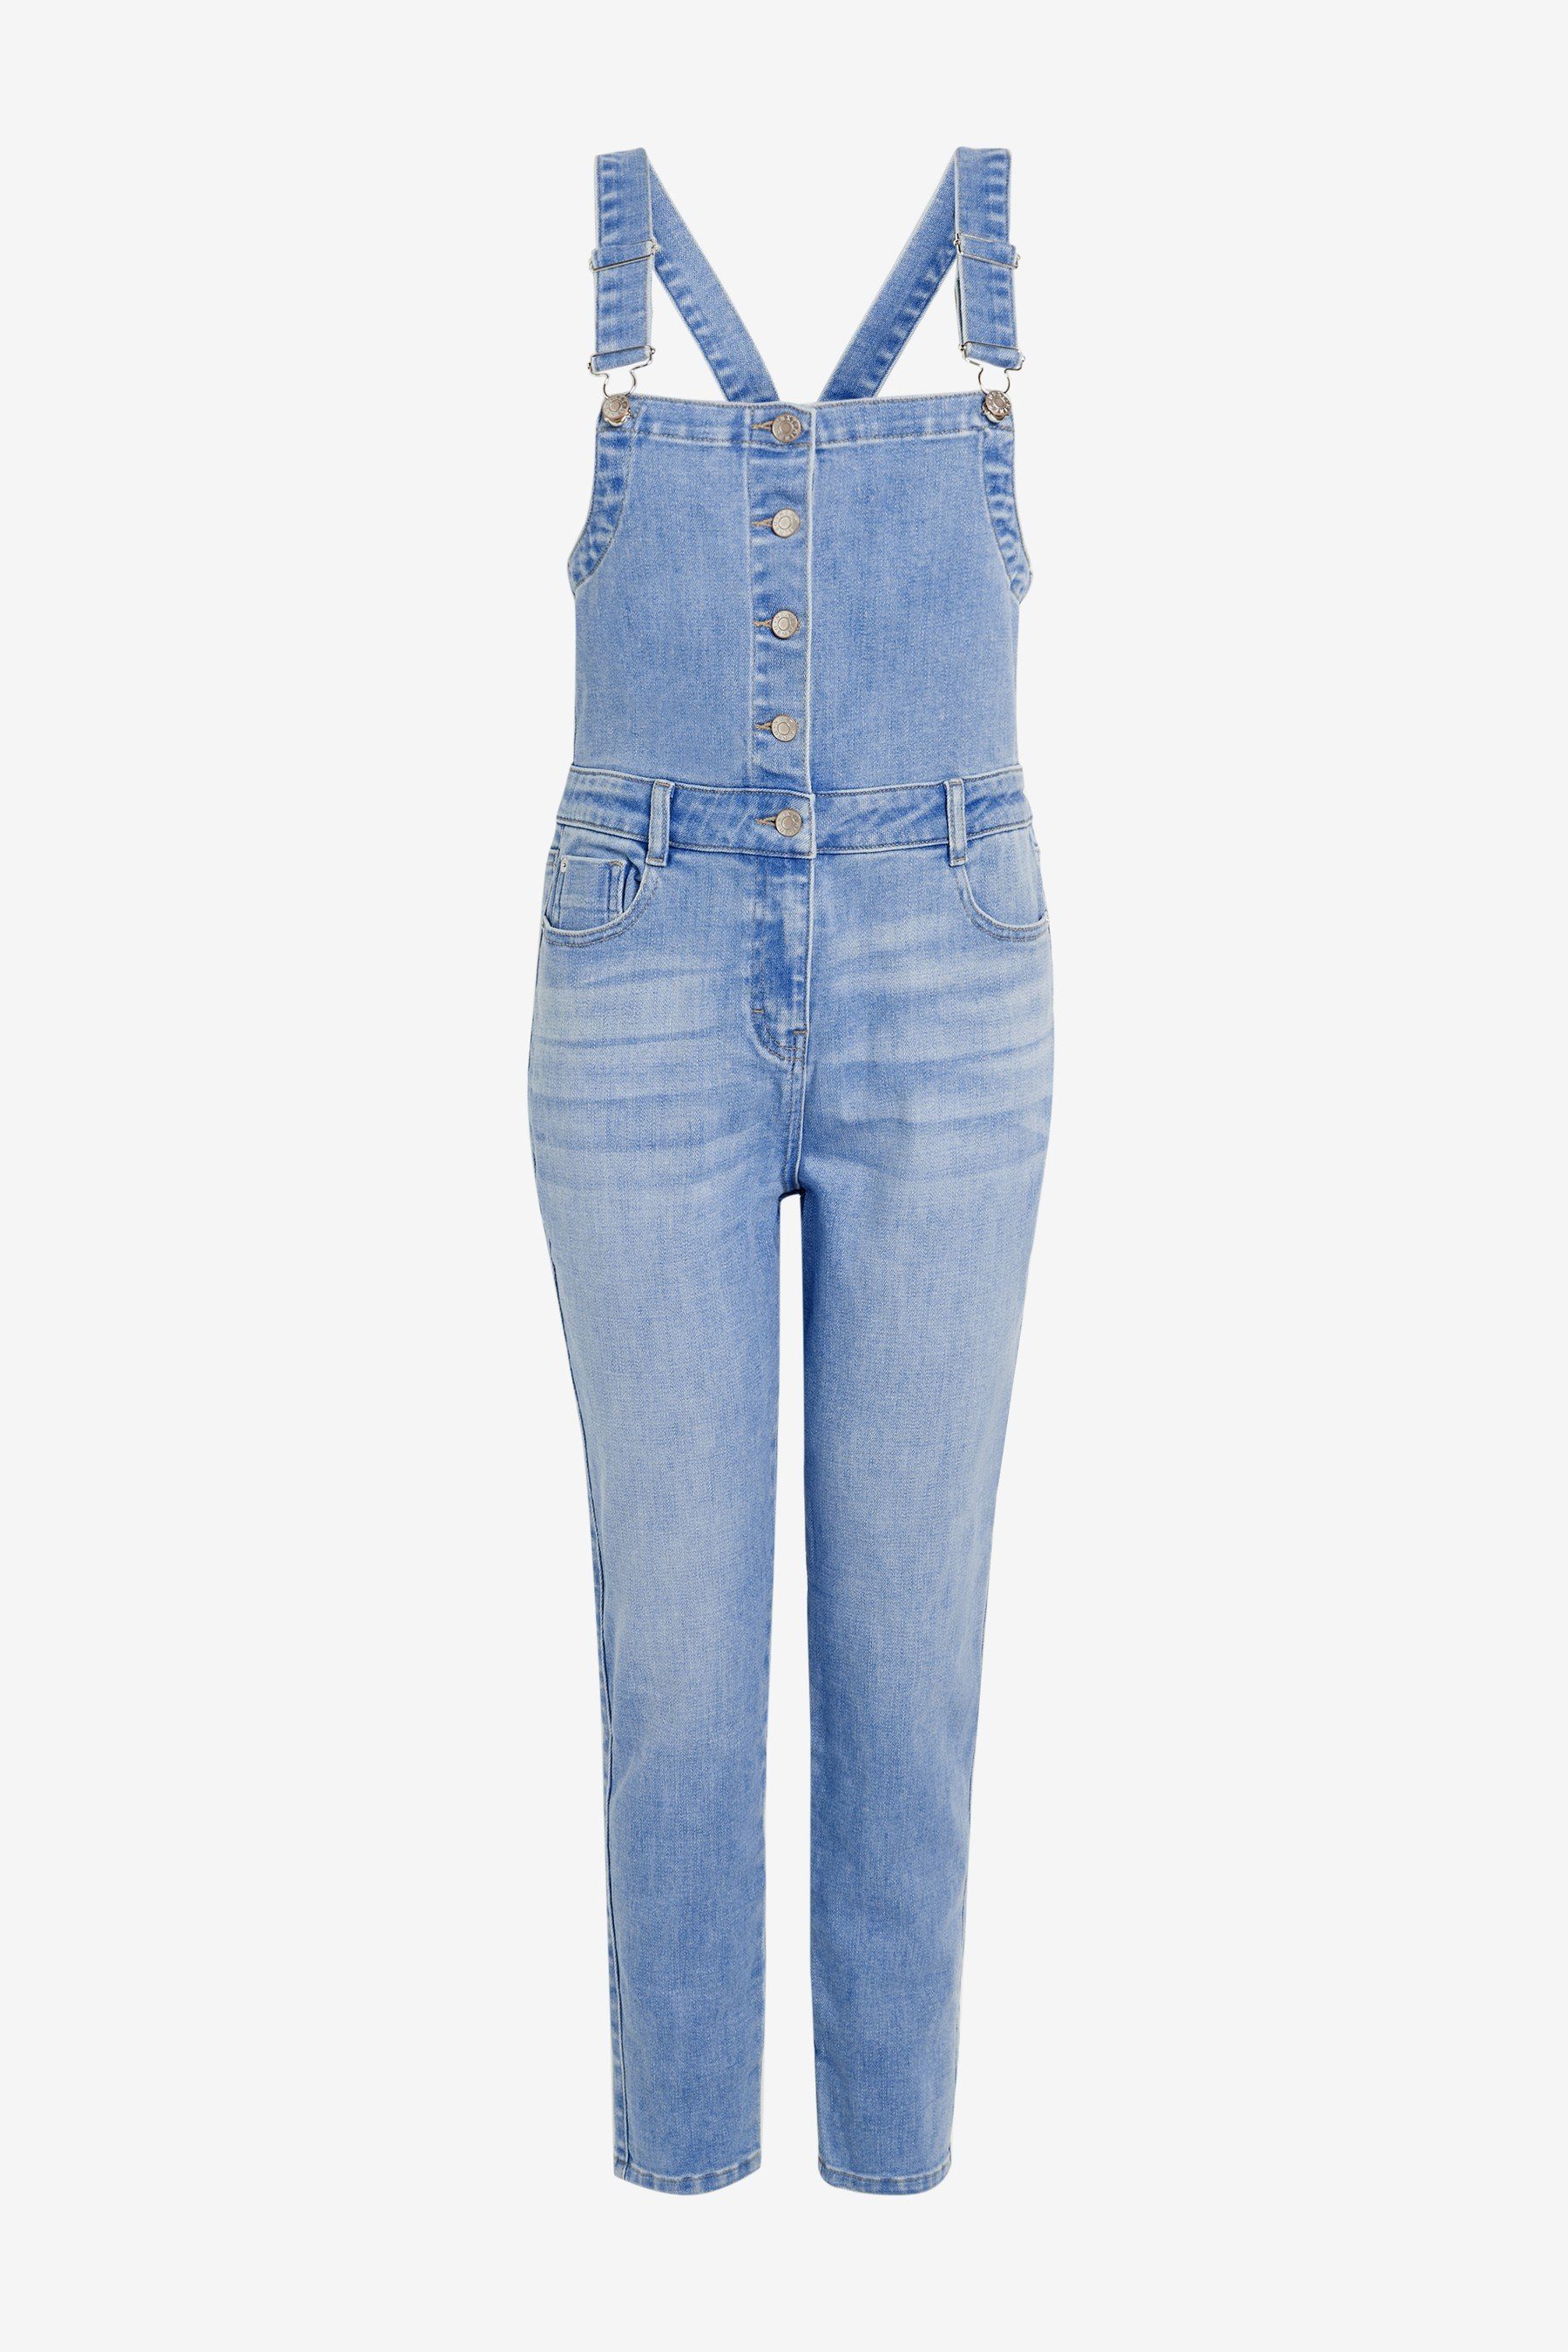 Günstige Jeans-Latzhose online kaufen » Reduziert im SALE | OTTO